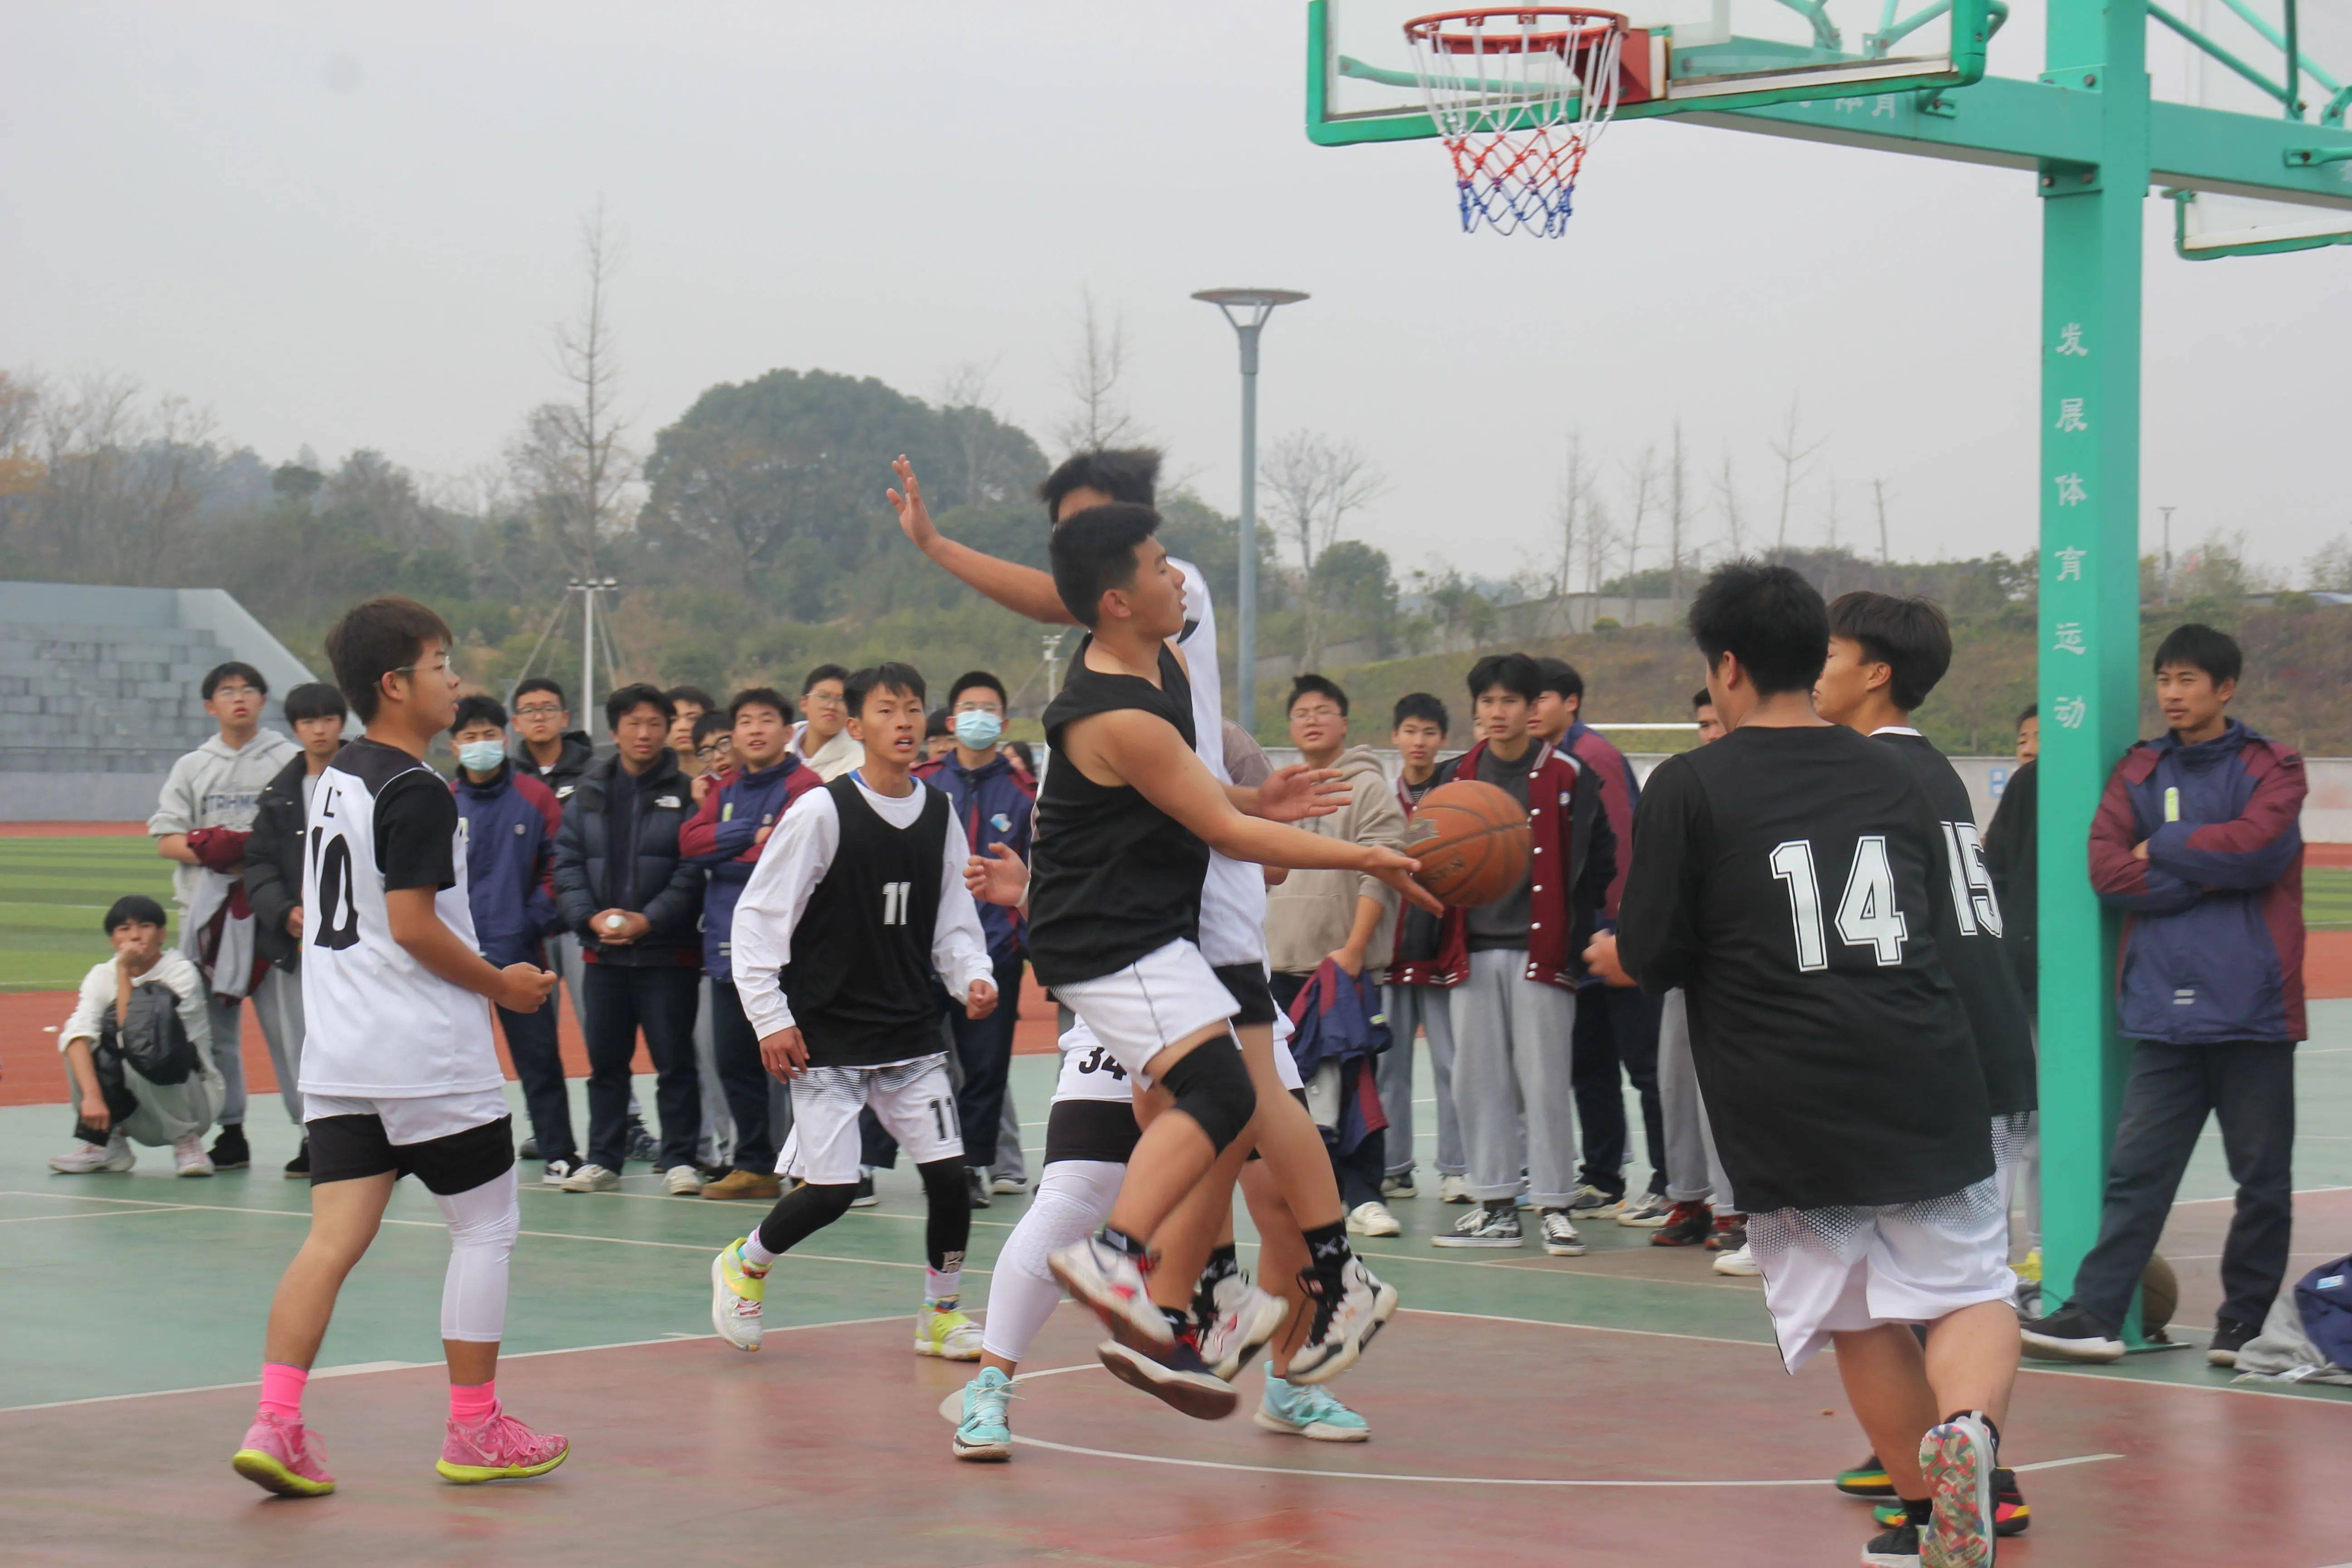 校园文化艺术节系列活动新昌技师学院智能制造系举办5v5篮球比赛